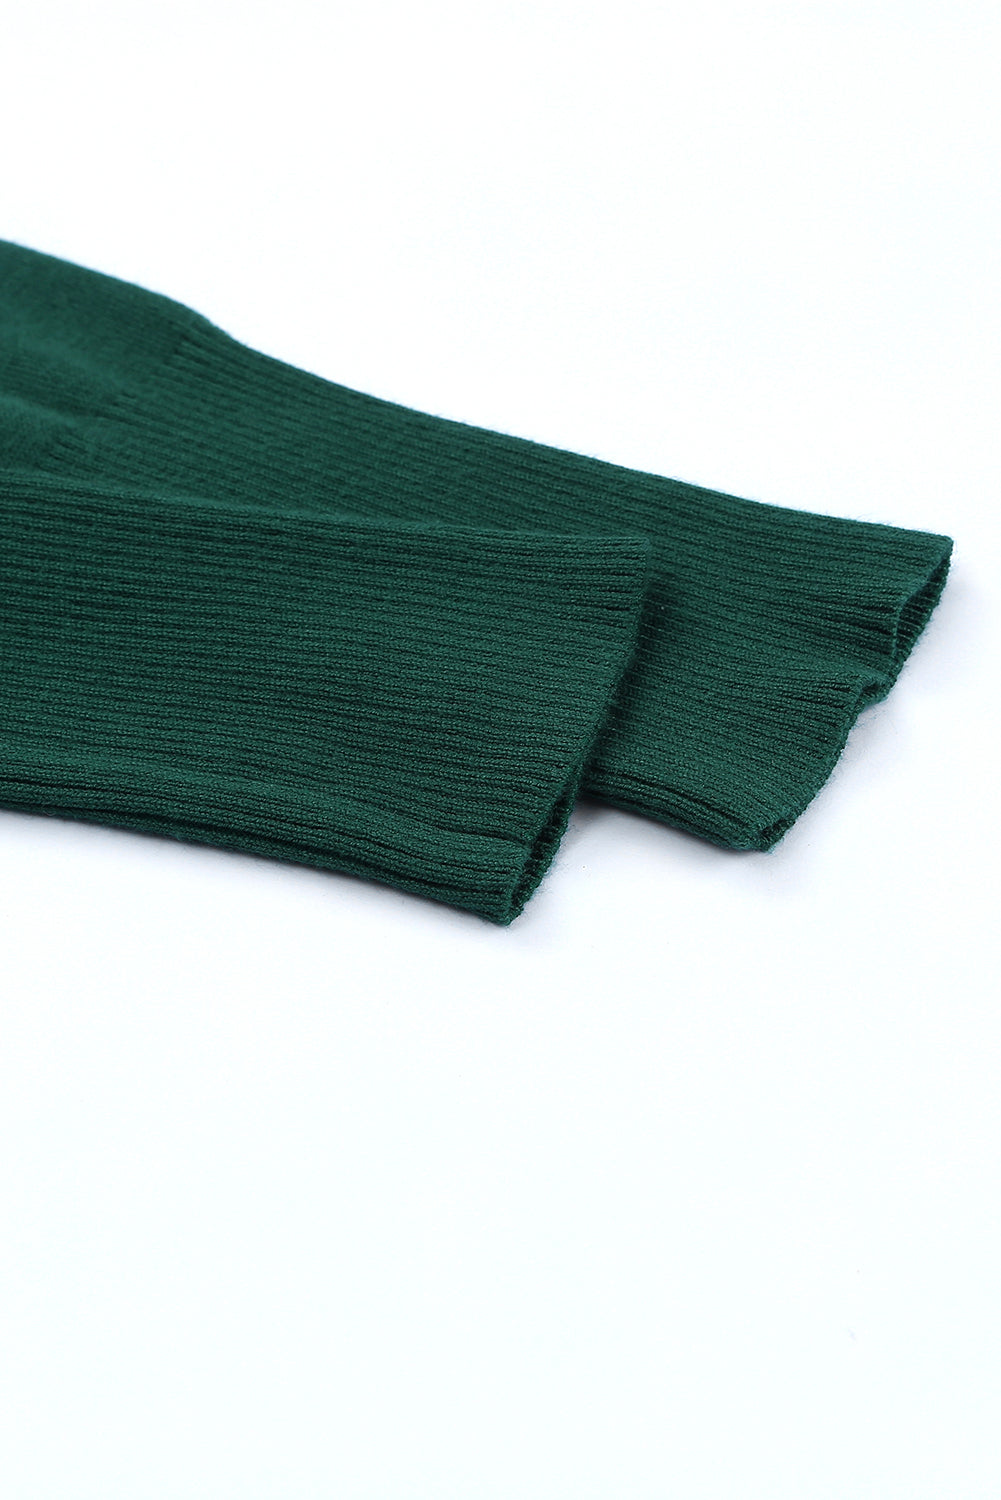 Cardigan vert à boutons-pression et bordures côtelées en tricot léger